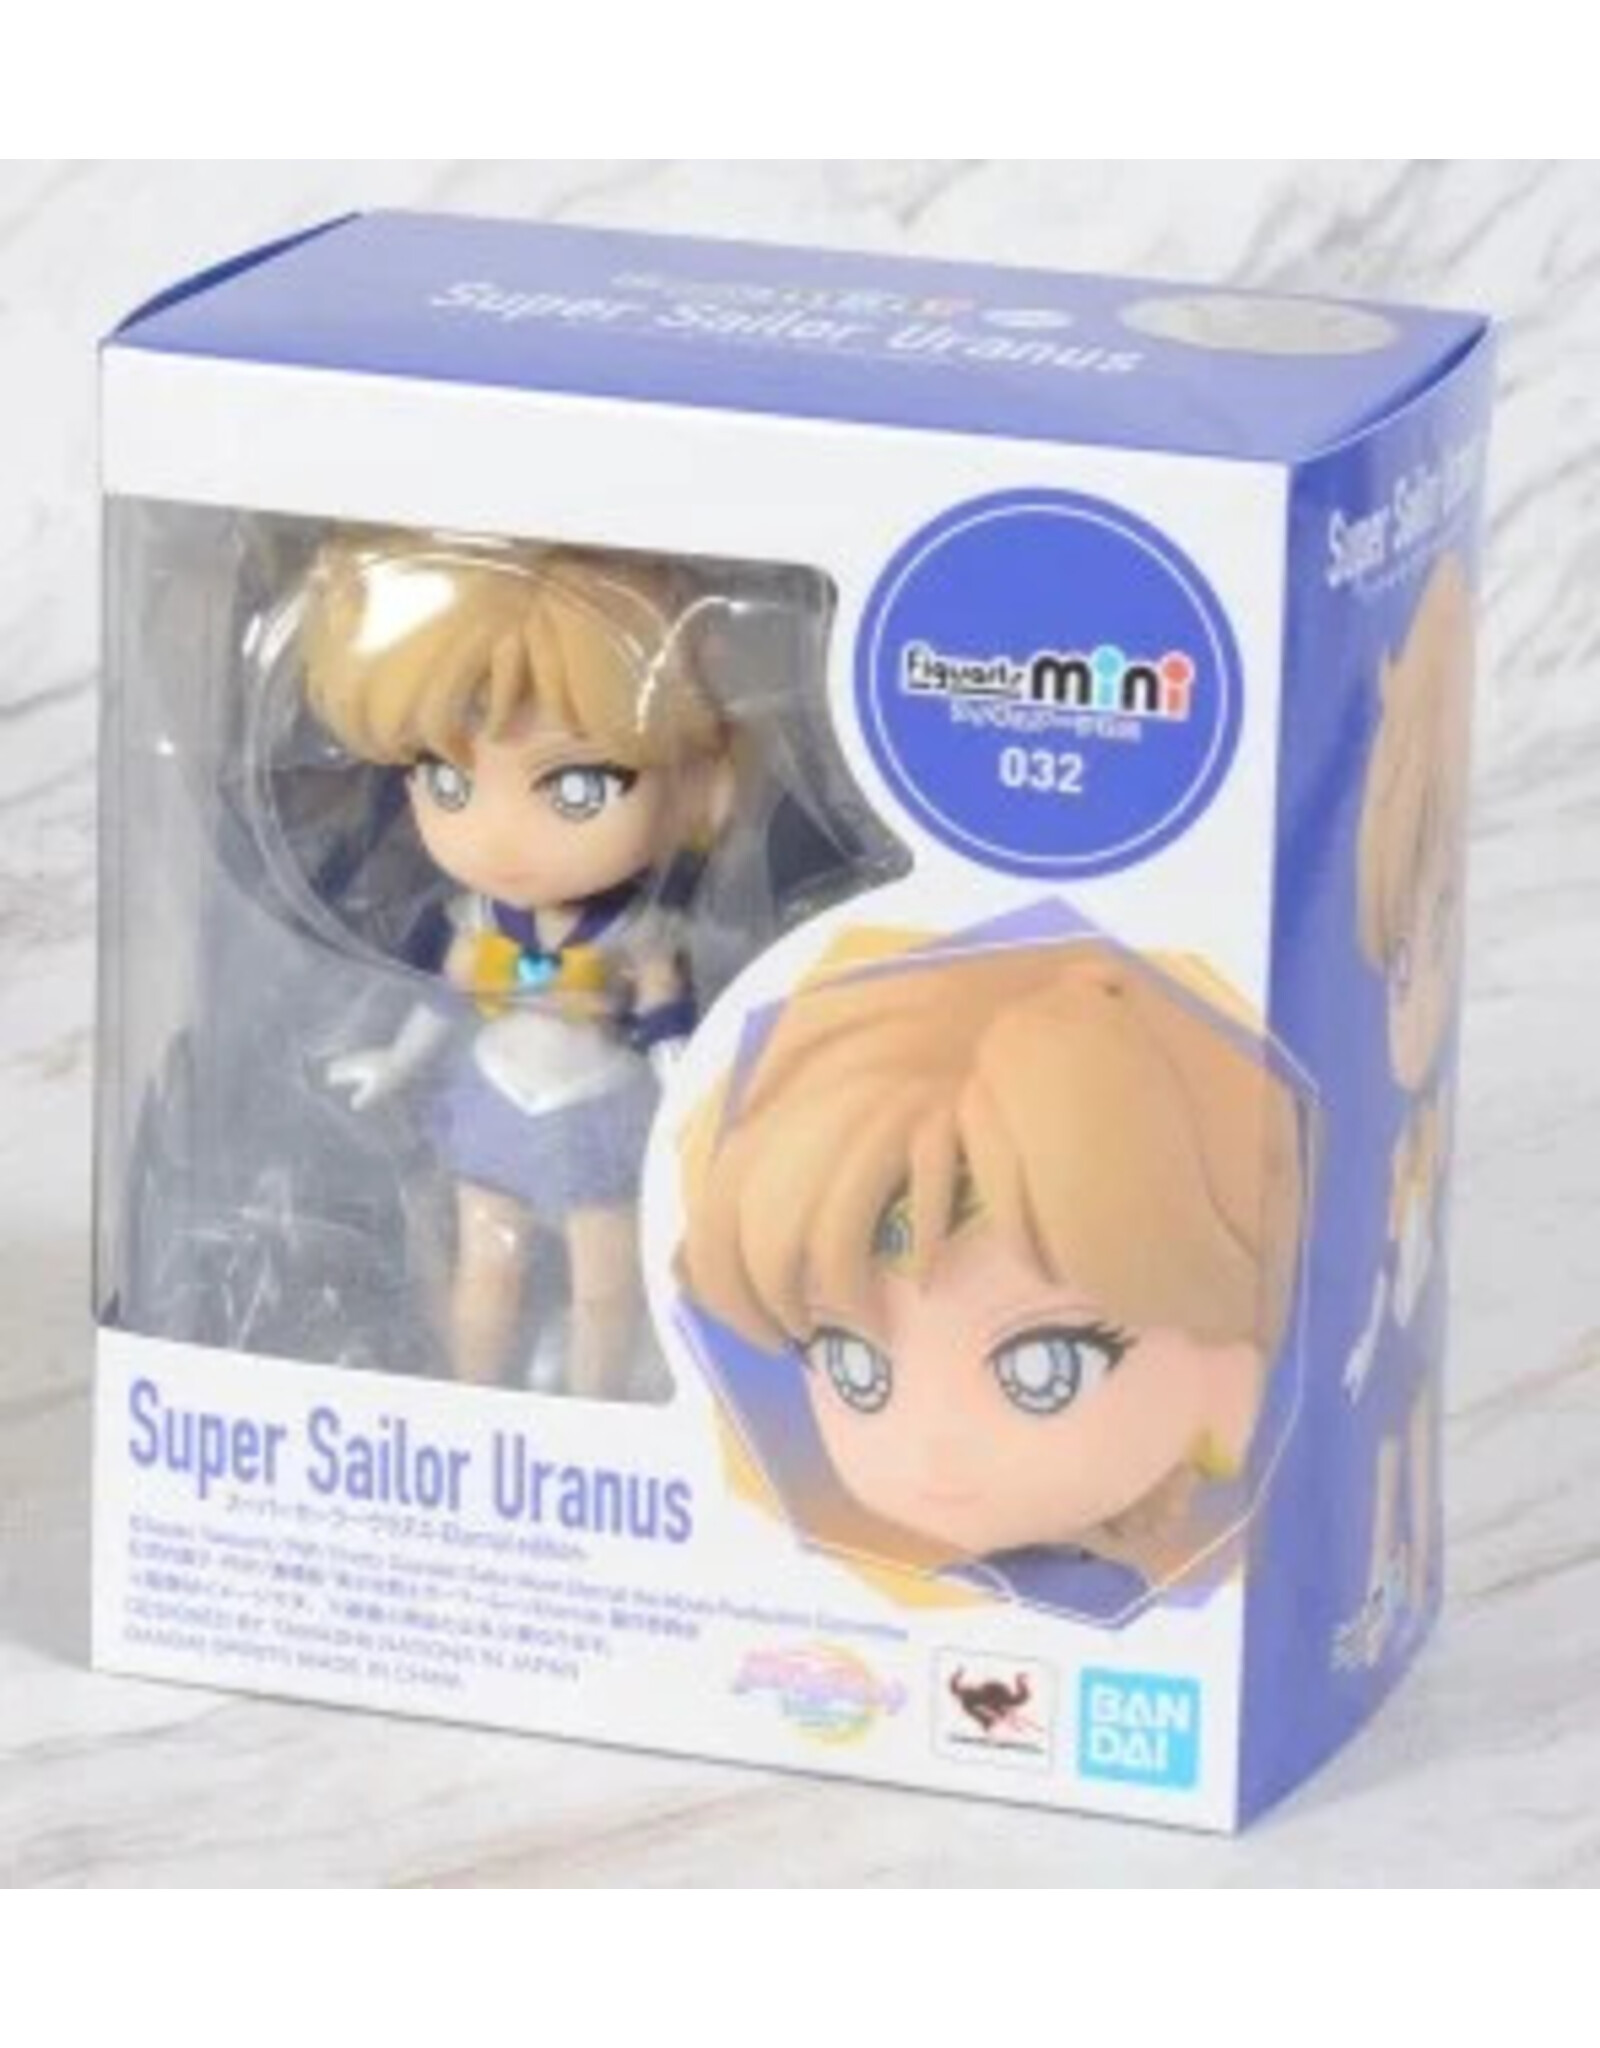 Figuarts Mini Sailor Uranus